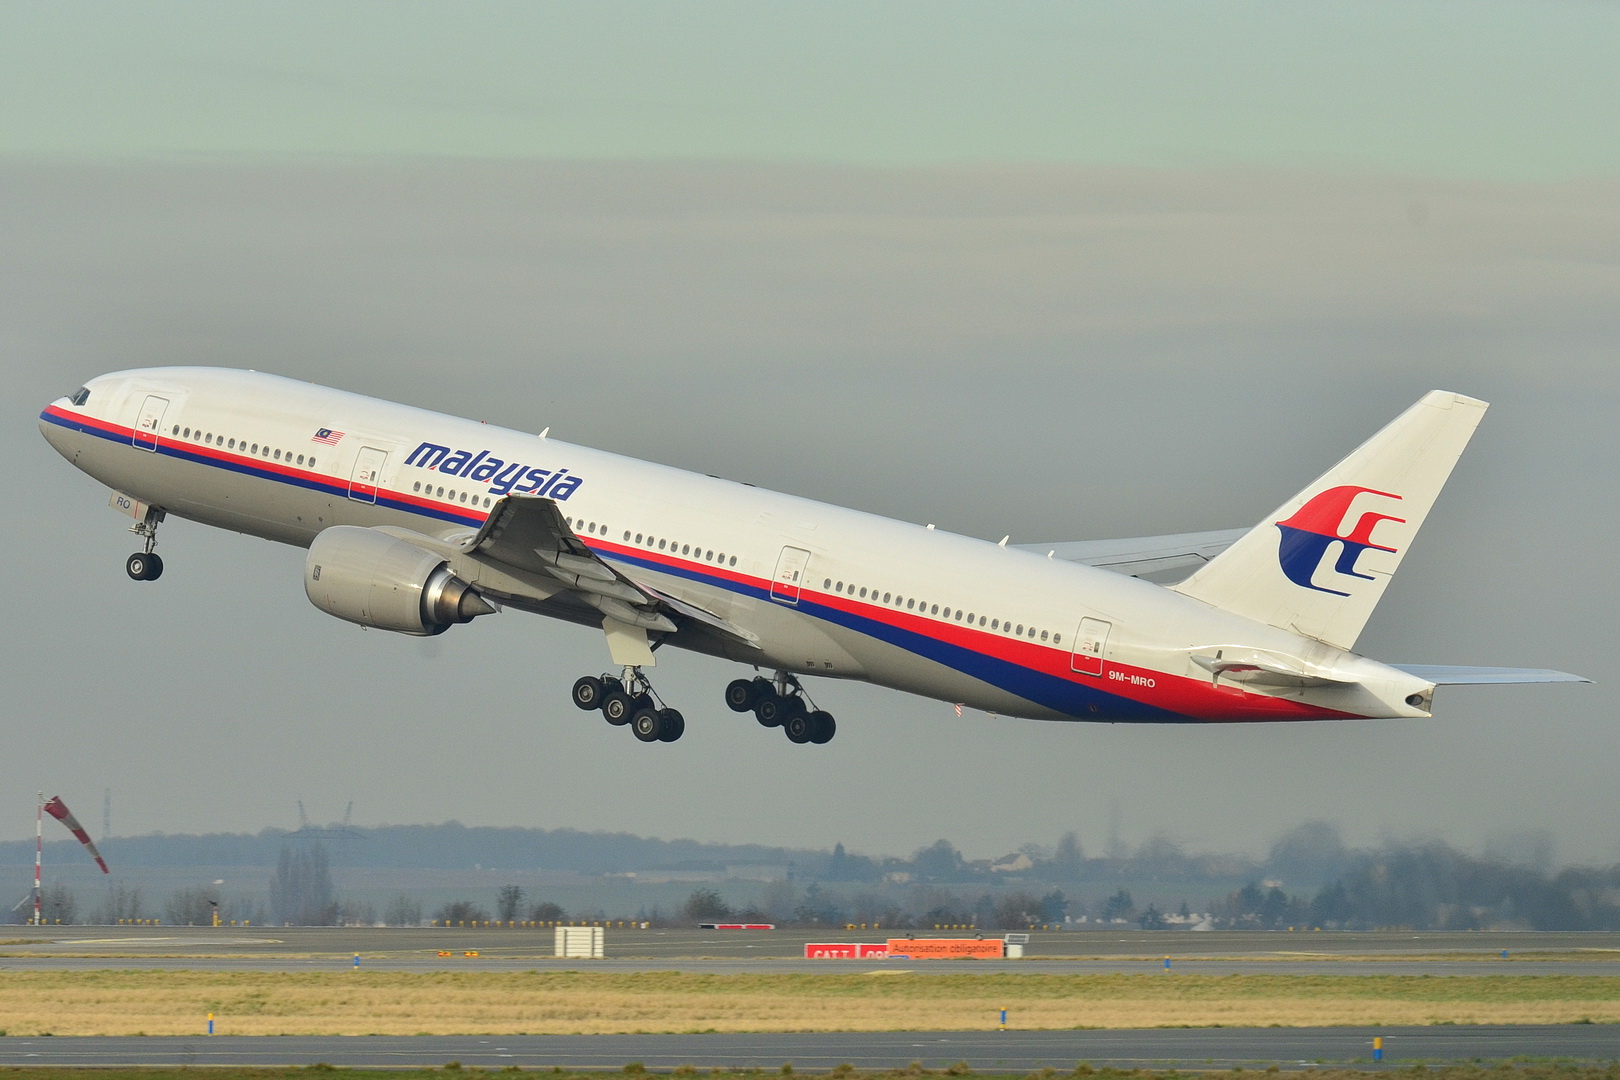 Le vol MH370 de Malaysia Airlines disparu des écrans radars - Page 6 Boeing_777-200ER_Malaysia_AL_%28MAS%29_9M-MRO_-_MSN_28420_404_%289272090094%29